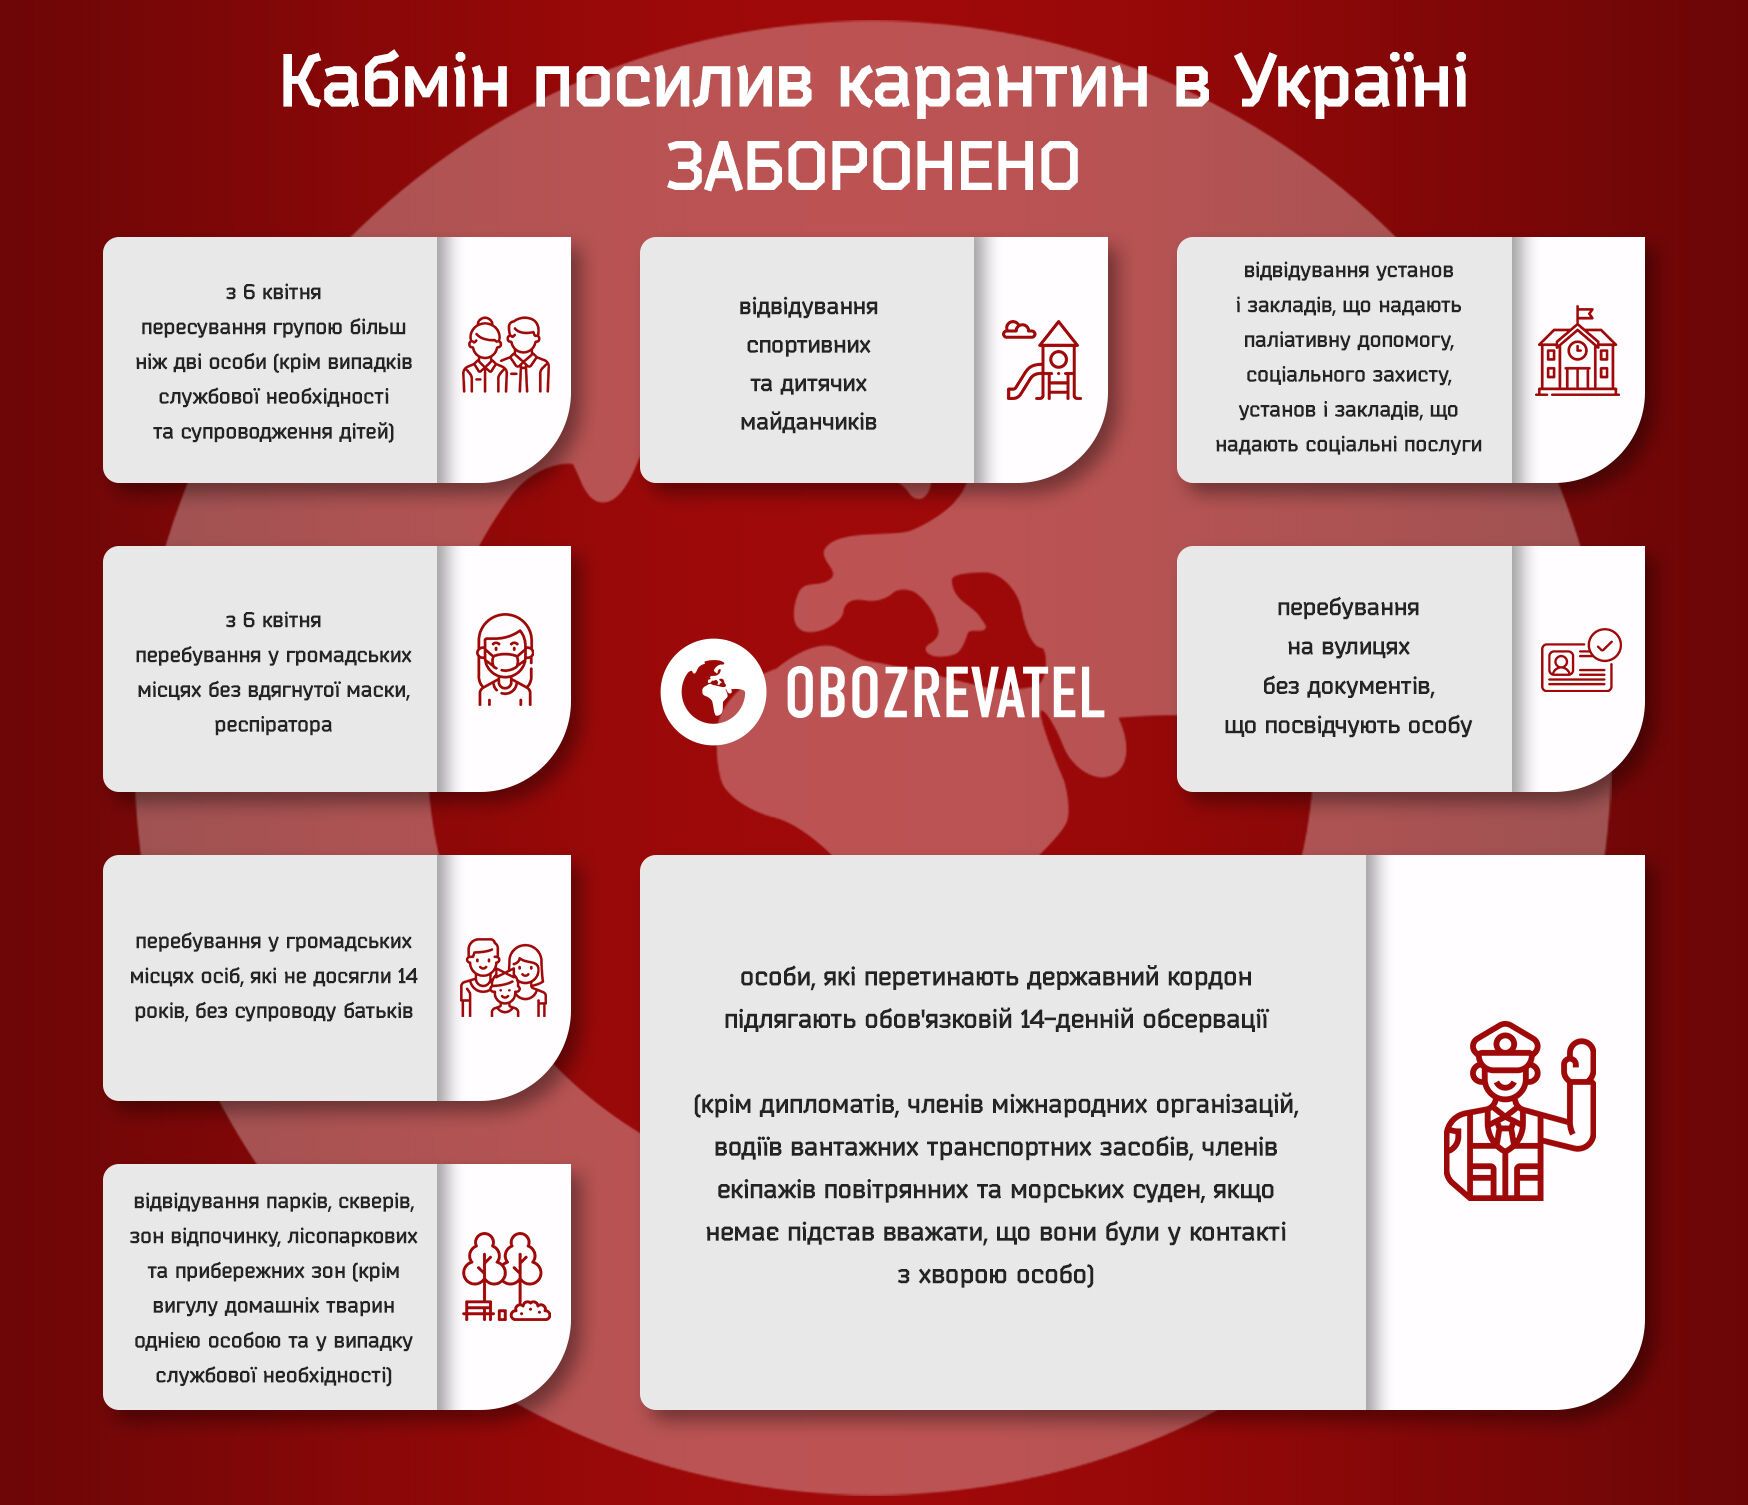 Опубликован полный текст постановления об усилении карантина в Украине. Документ